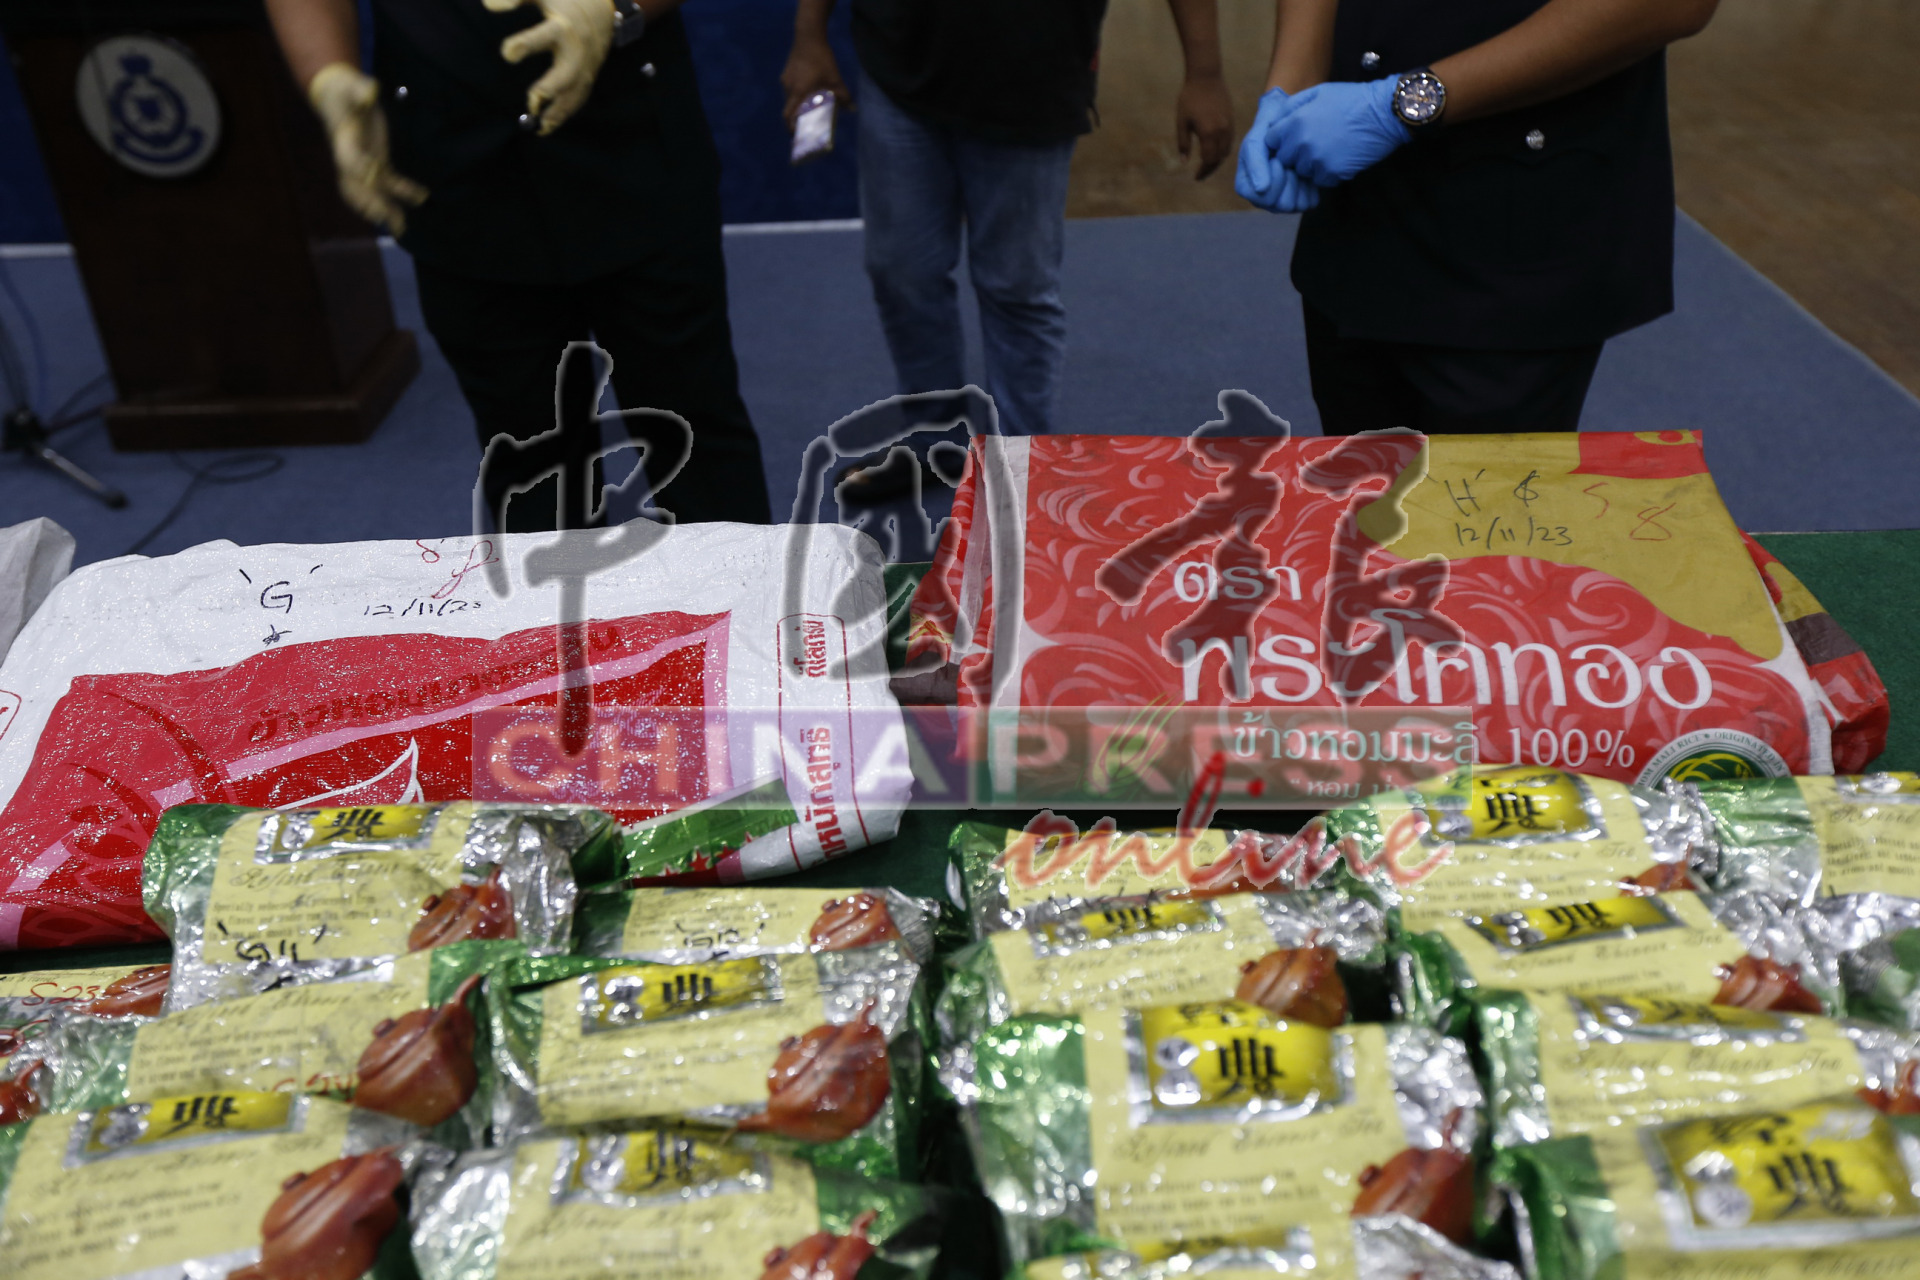 190包“观音王”茶包毒品装入8个米袋，企图从巴生谷运往西马各地，结果被布网已久的警方当场截获。